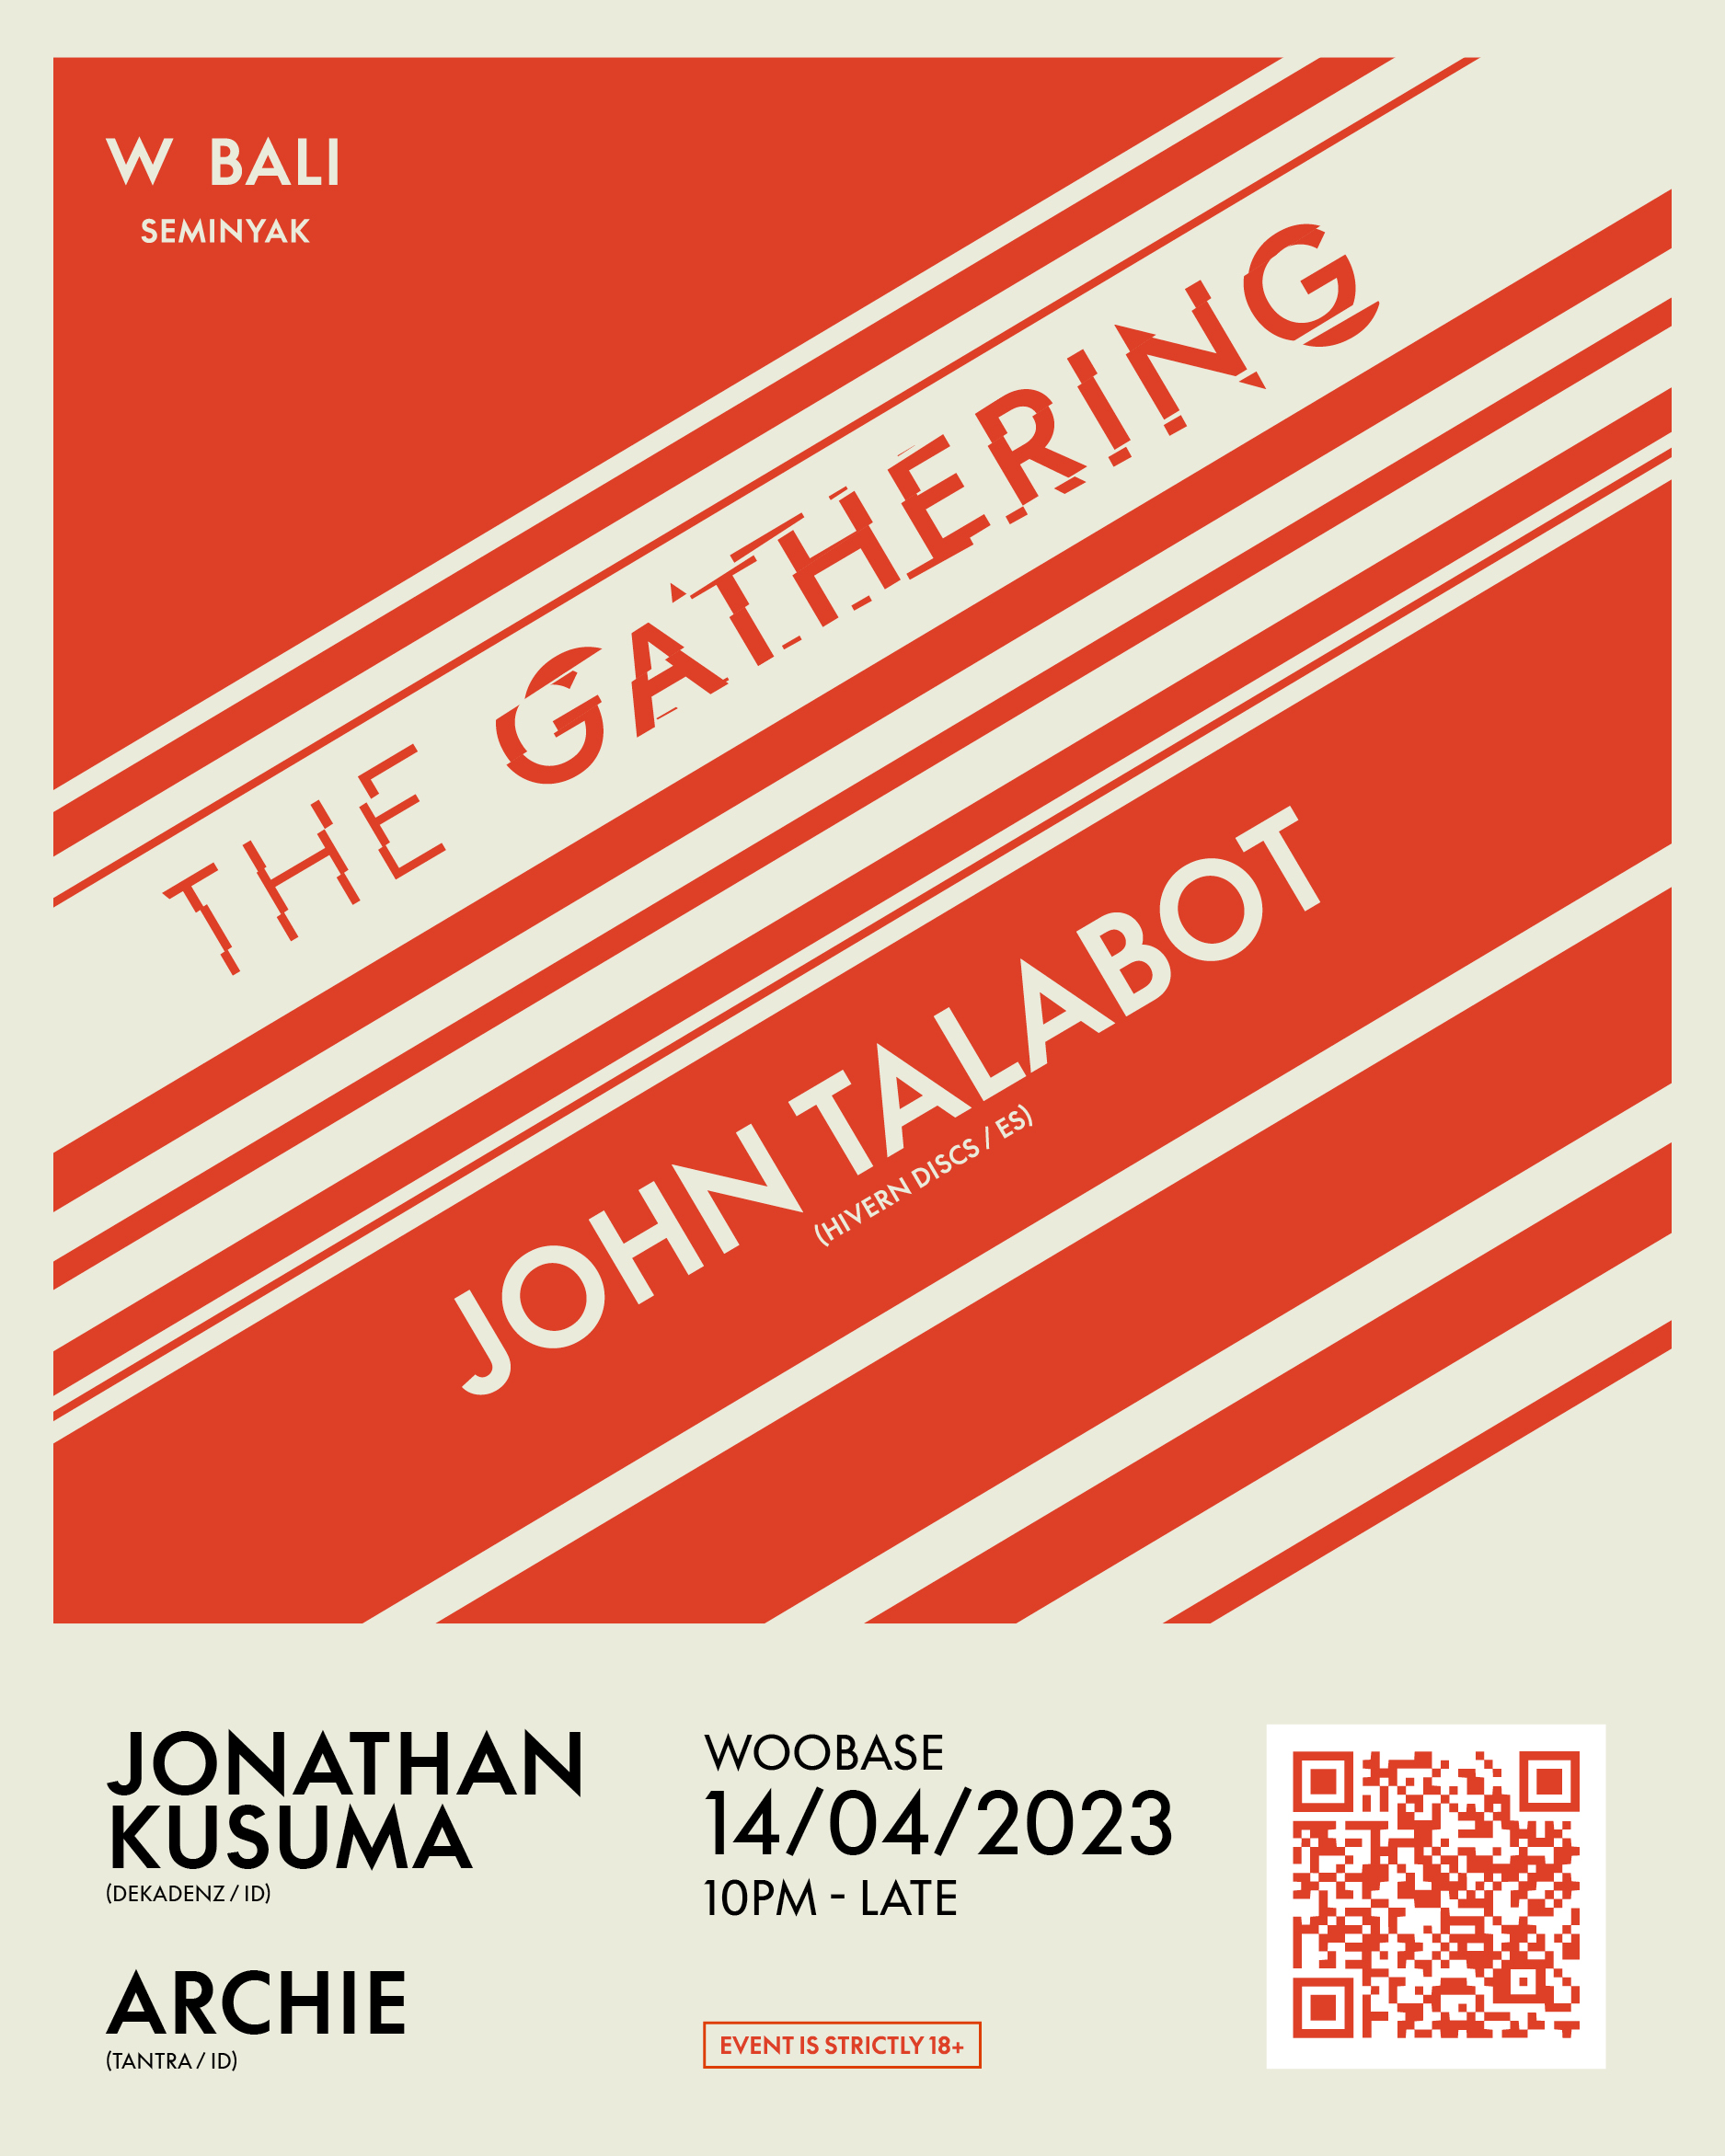 W BALI PRESENTS THE GATHERING FT JOHN TALABOT – FRIDAY APRIL 14TH thumbnail image